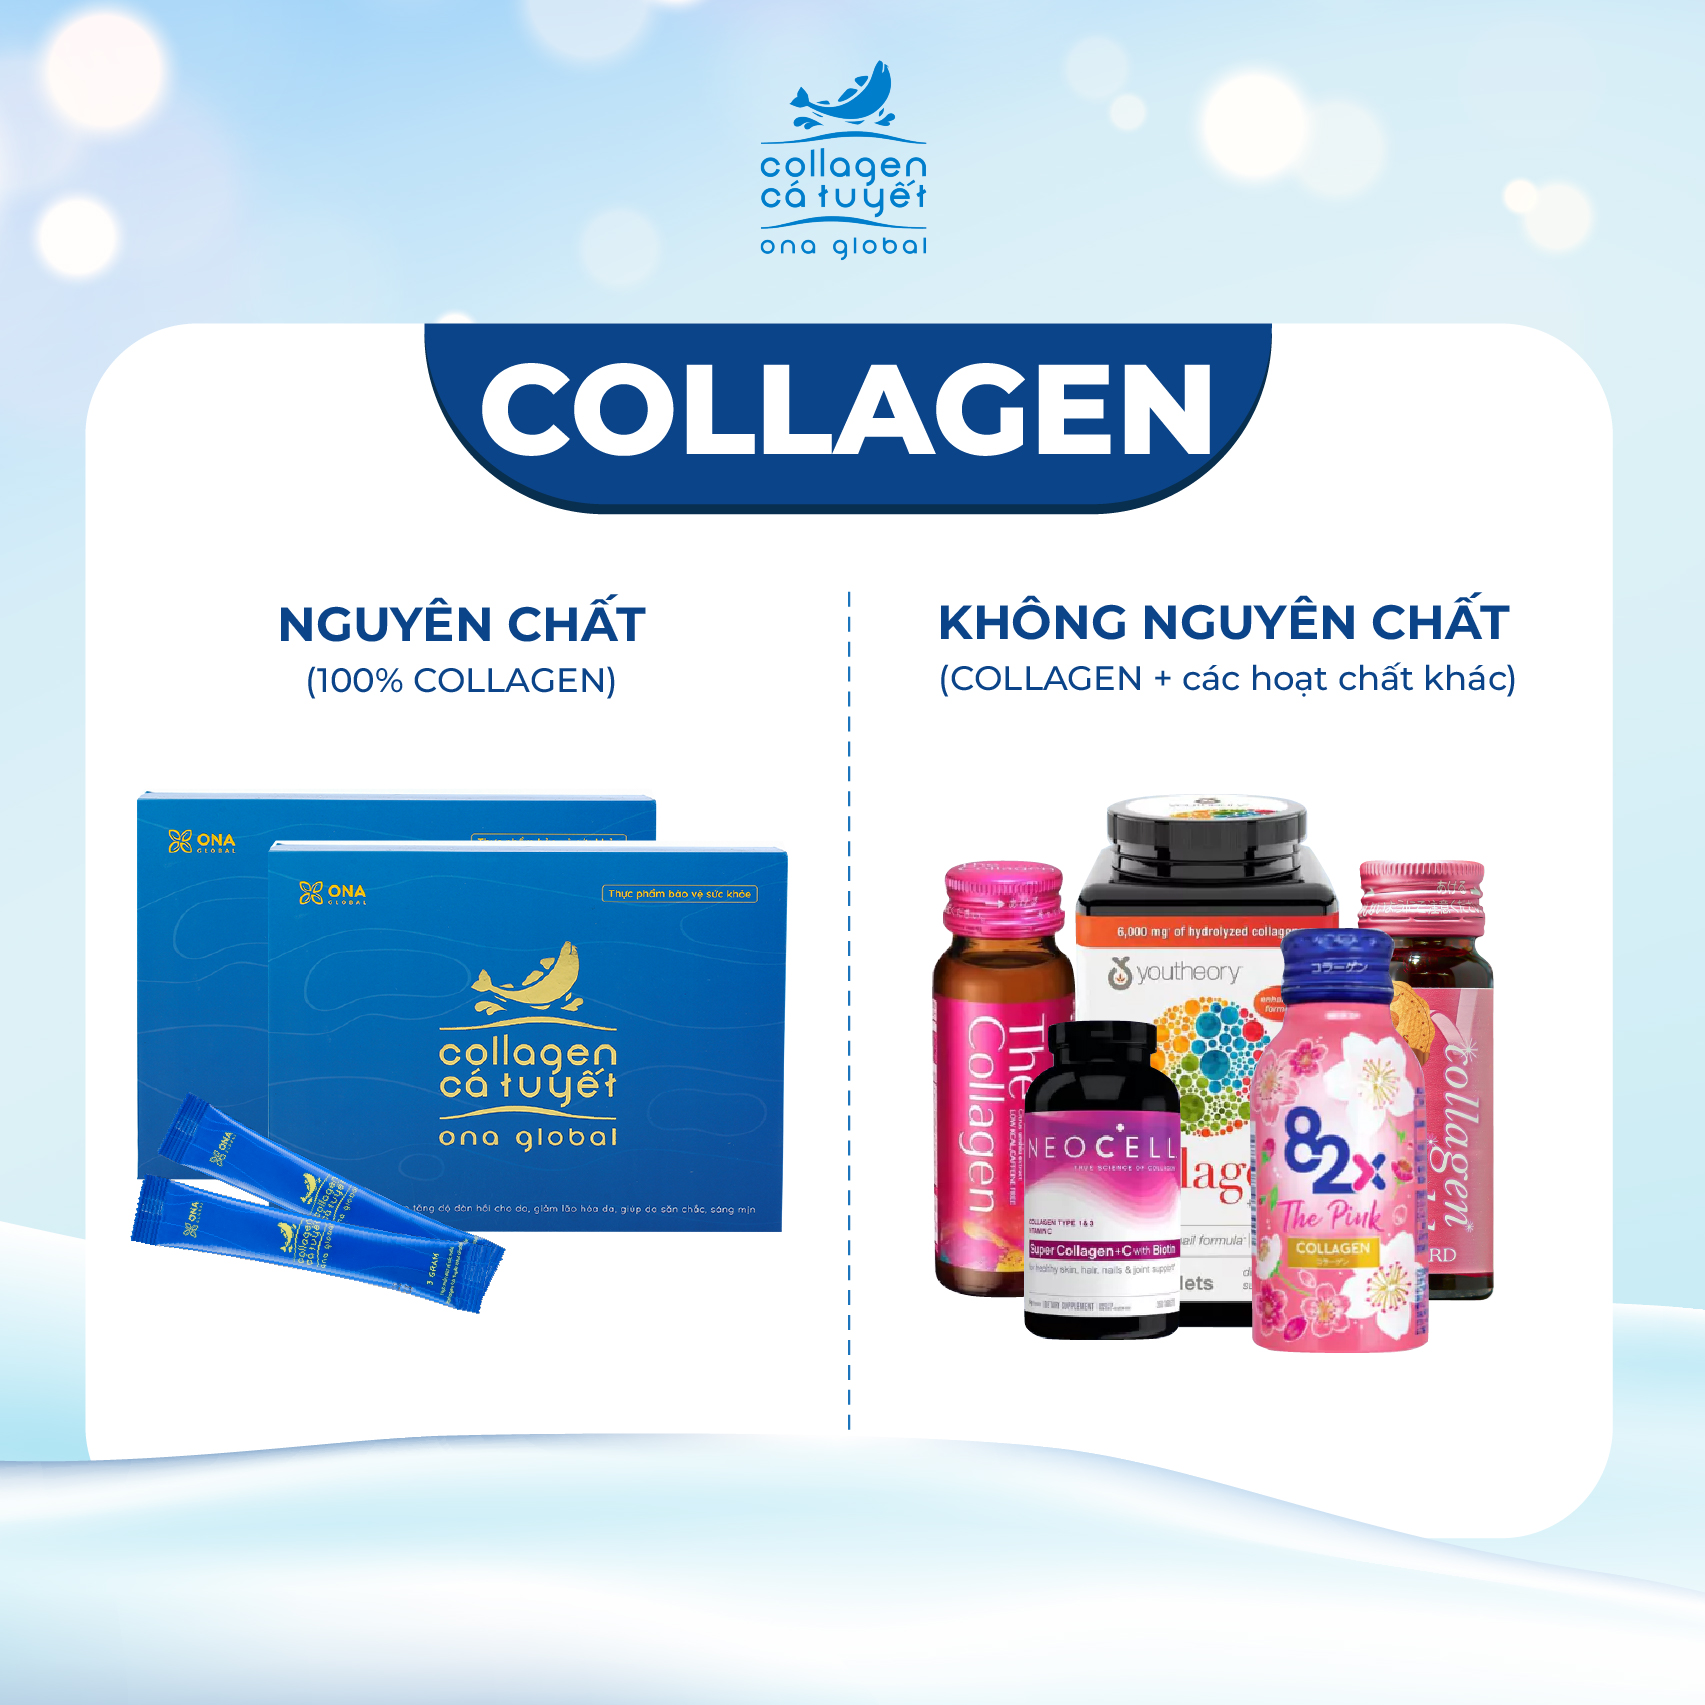 Lý do Collagen nguyên chất được nhiều người lựa chọn?